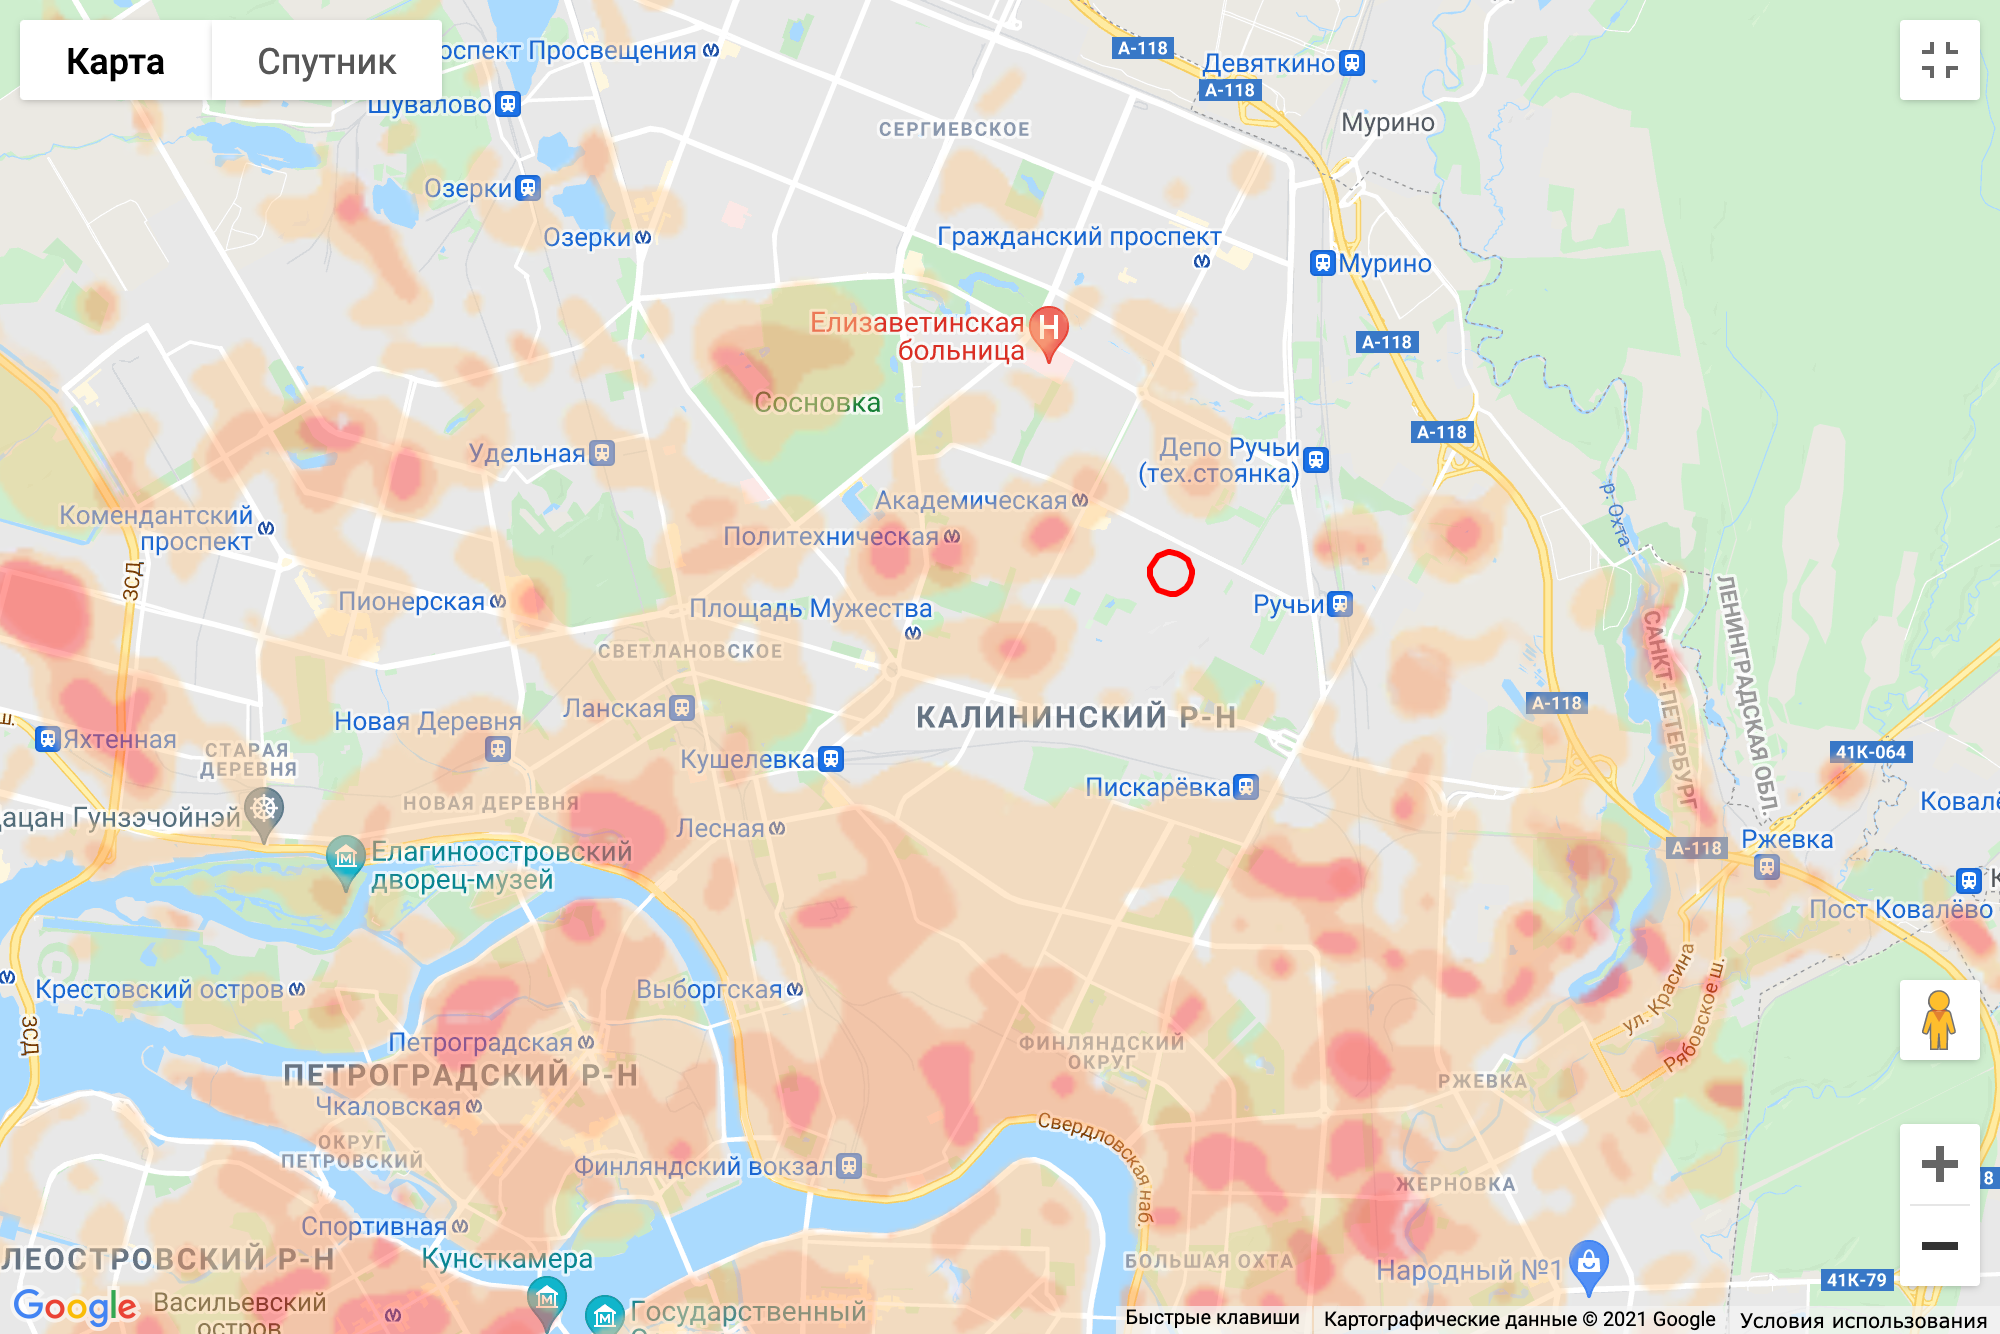 Загрязненные места Калининского района тяжелыми металлами. Красным цветом выделены самые загрязненные места, желтым — наименее загрязненные. Источник: cottagesspb.ru